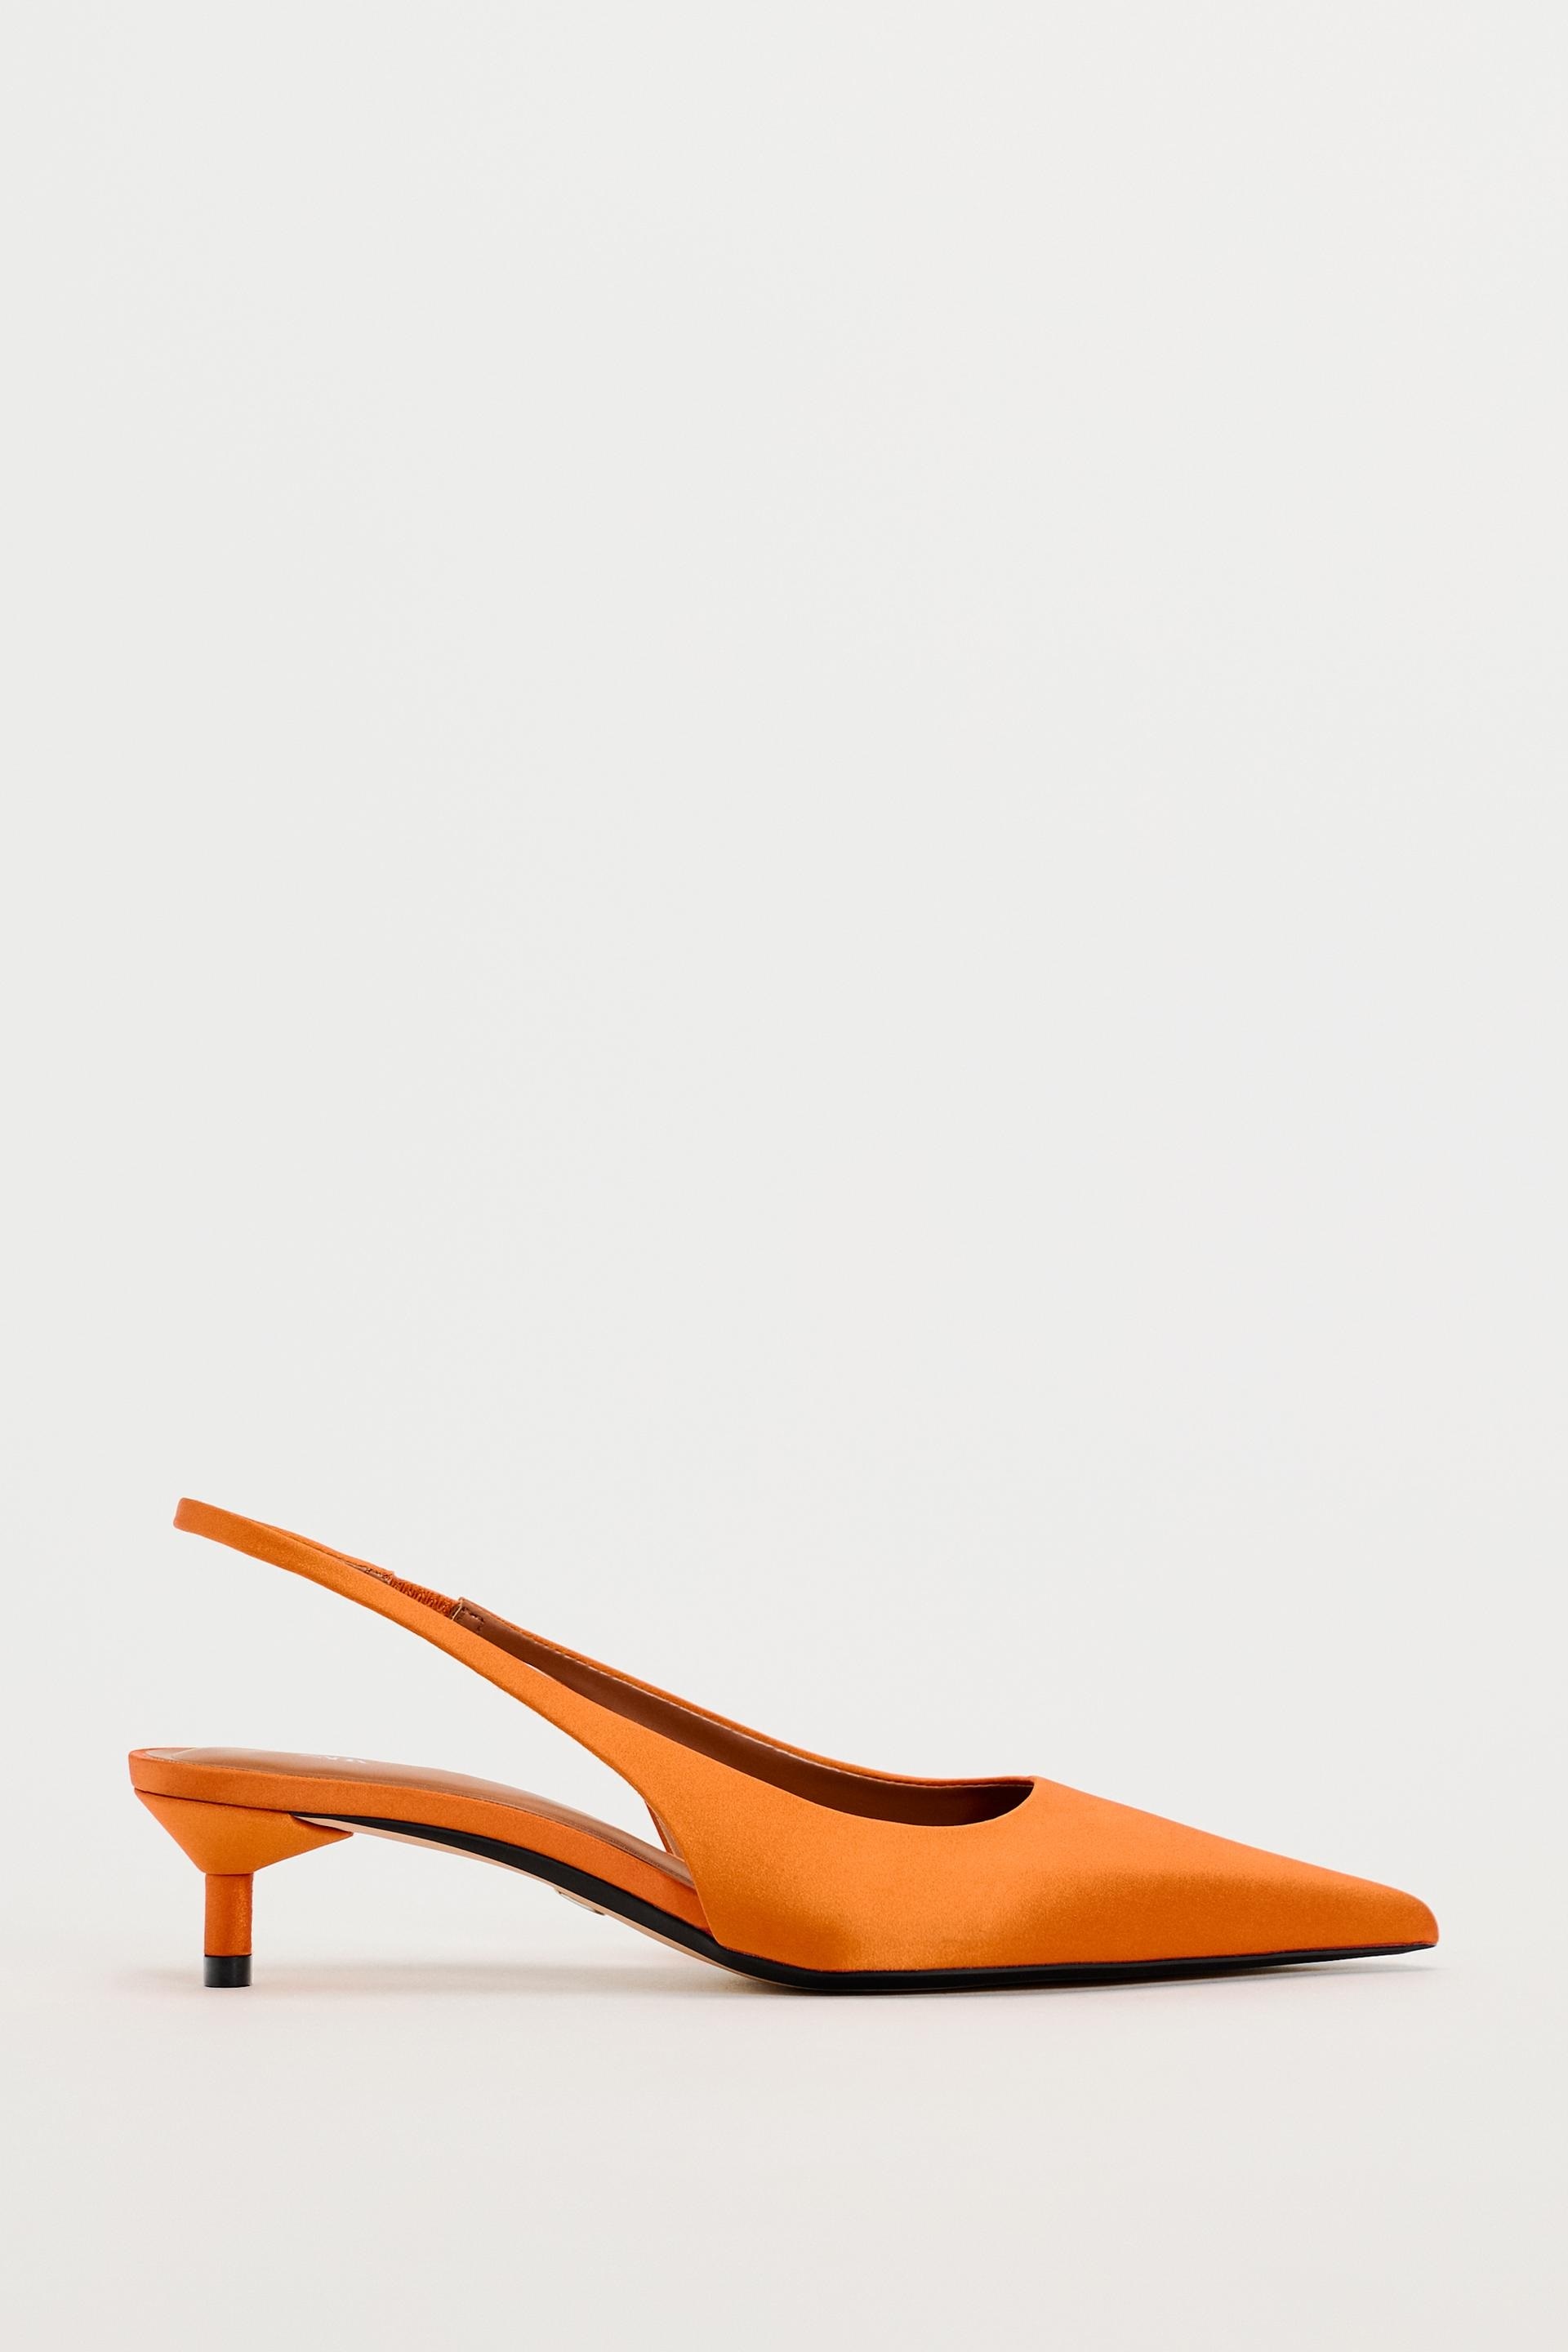 El tacn en tendencia: los zapatos kitten heel satinados ms bonitos de Zara